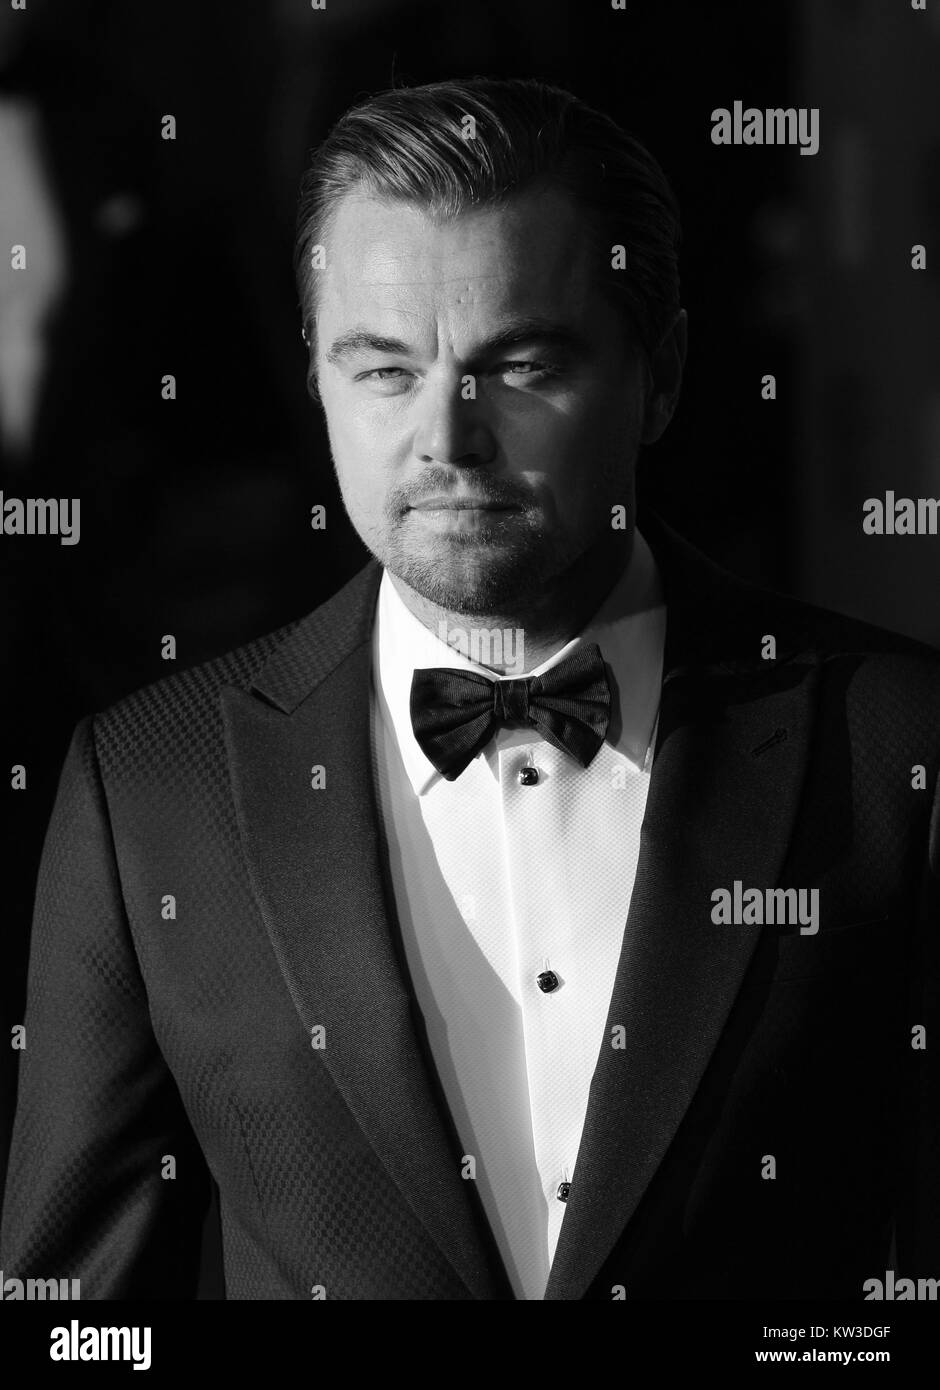 Londra - Feb 14, 2016: ( Immagine Altered digitalmente a monocromatica ) Leonardo DiCaprio assiste l'EE Bafta British Academy Film Awards presso la Royal Opera House on Feb 14, 2016 a Londra Foto Stock